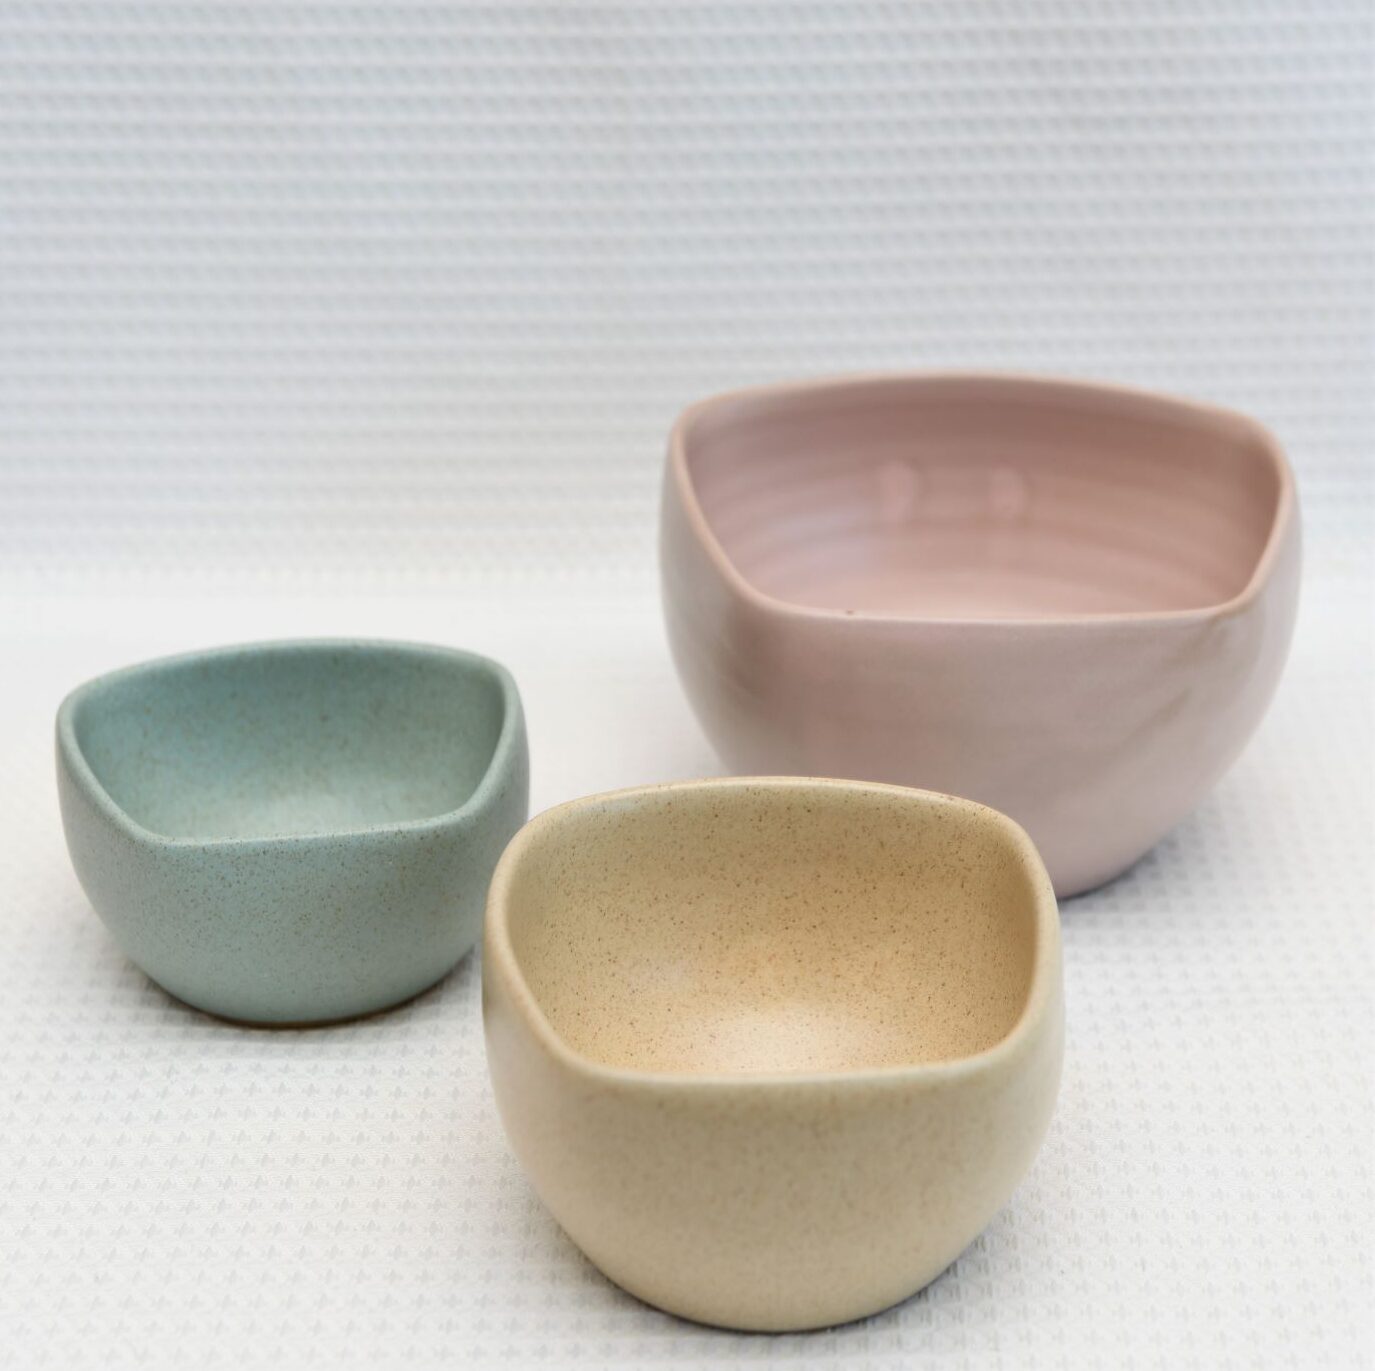 Ceramic Nesting Bowls - Aboriginal design - Pastels